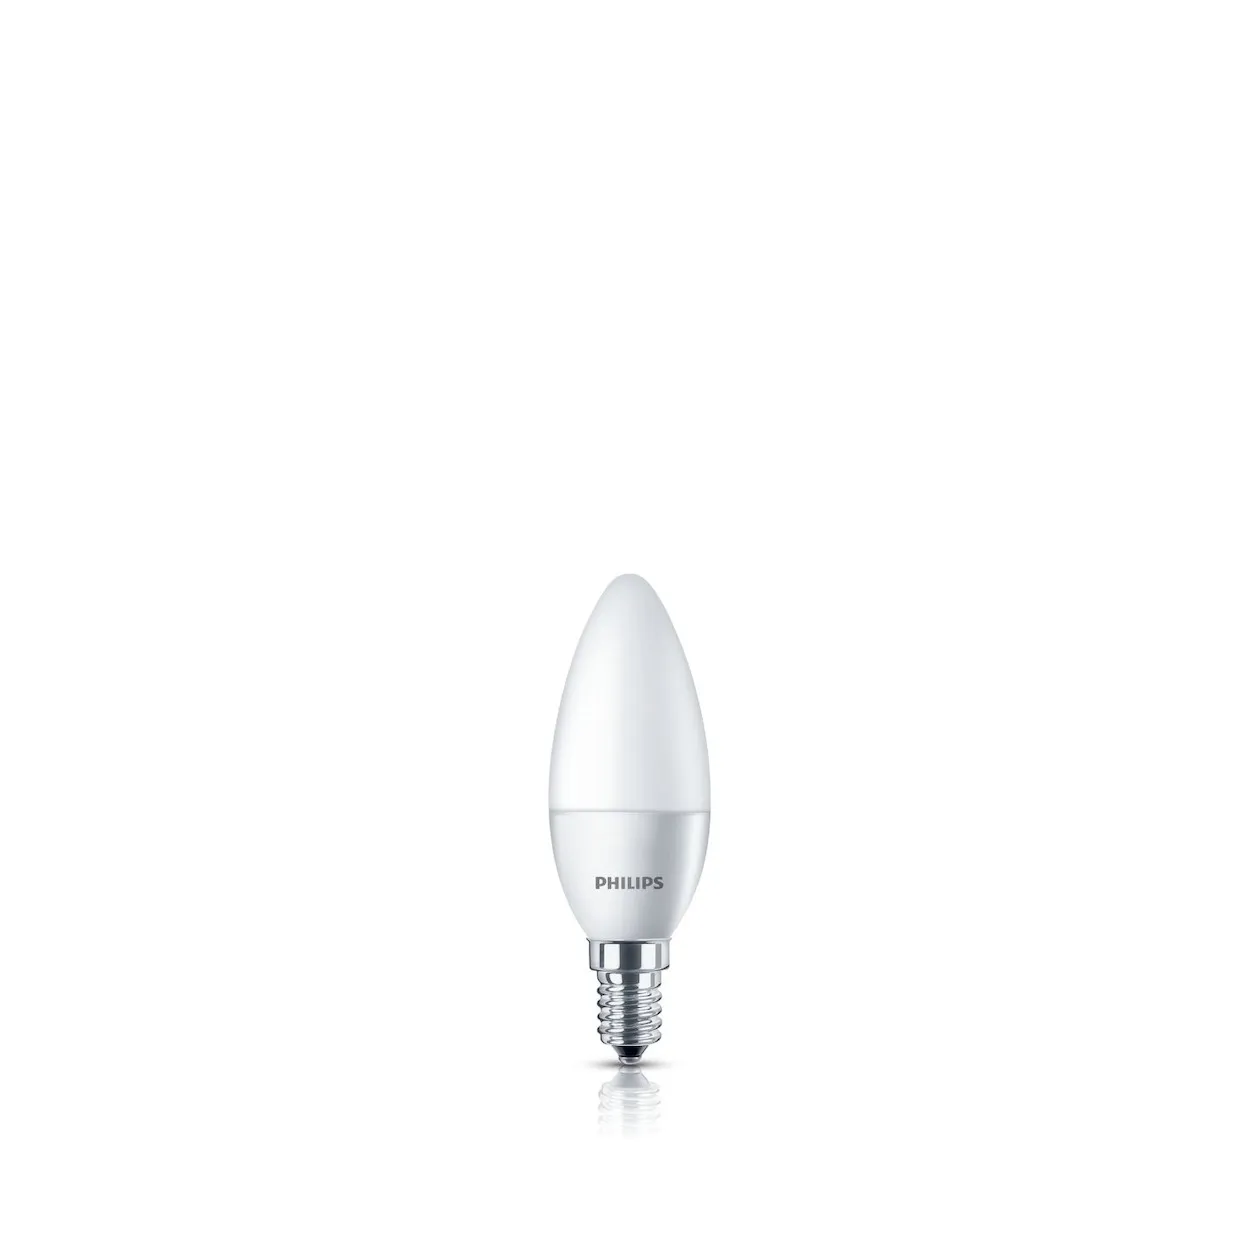 Philips LED lamp E4 4W 250Lm kaars mat 2 stuks